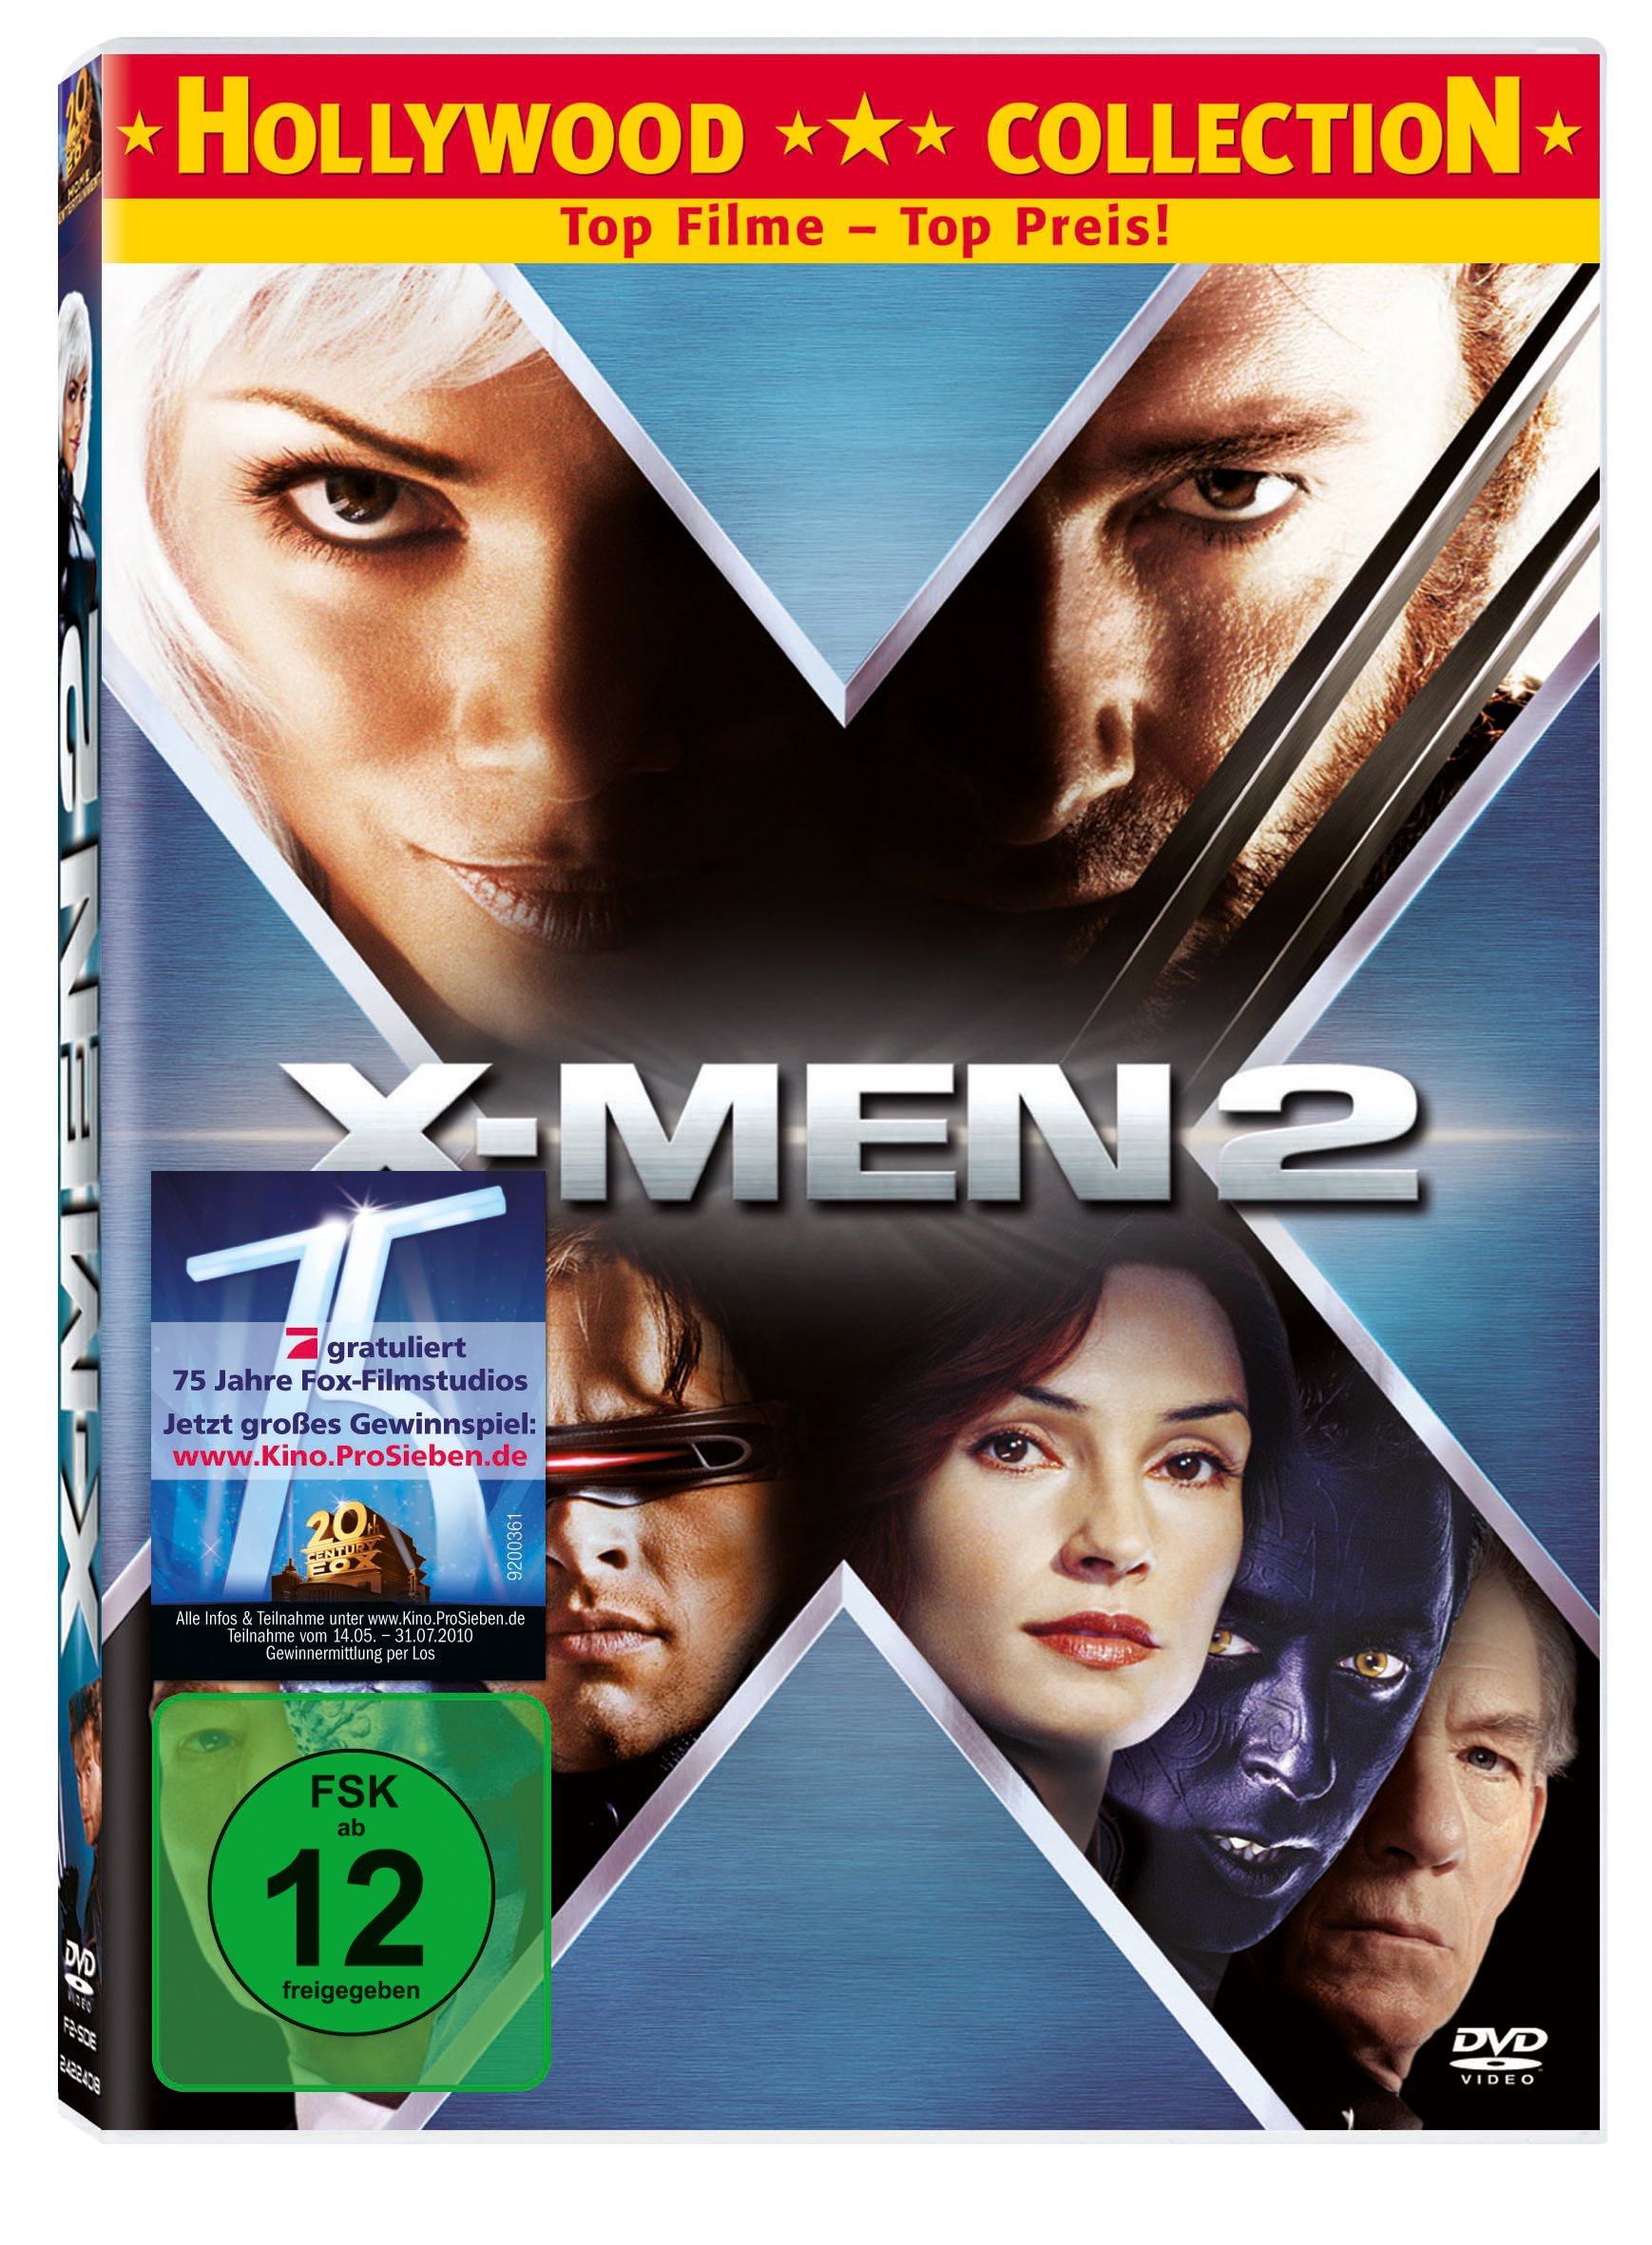 X-Men 2  Standard Version - Sir Patrick Stewart Hugh Jackman  und  Sir Ian McKellen